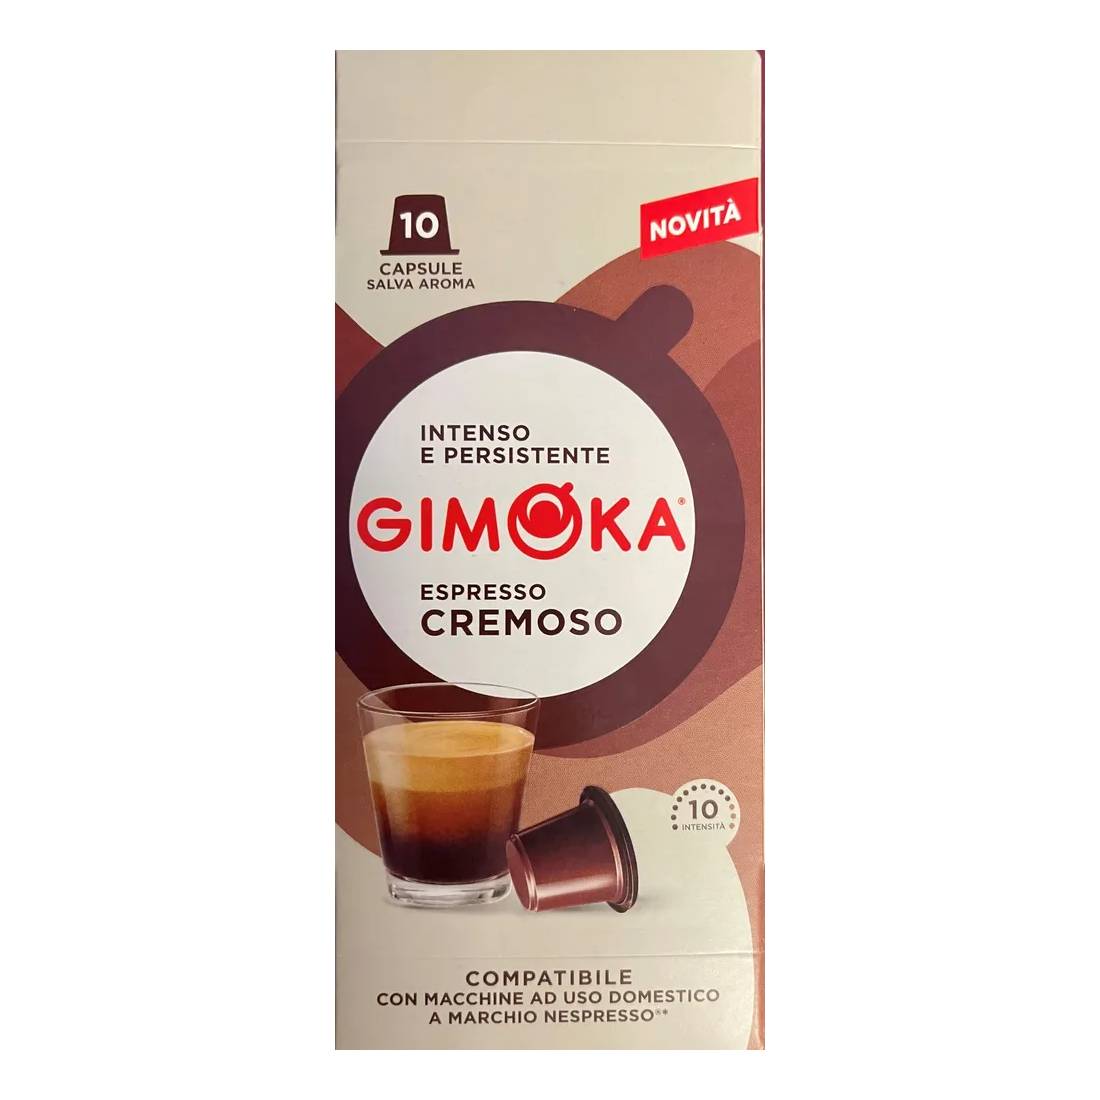 Капсулы Gimoka Nespresso Classic Cremoso, 10 шт кофе lazy barista classic в капсулах для кофемашин nespresso 10 шт